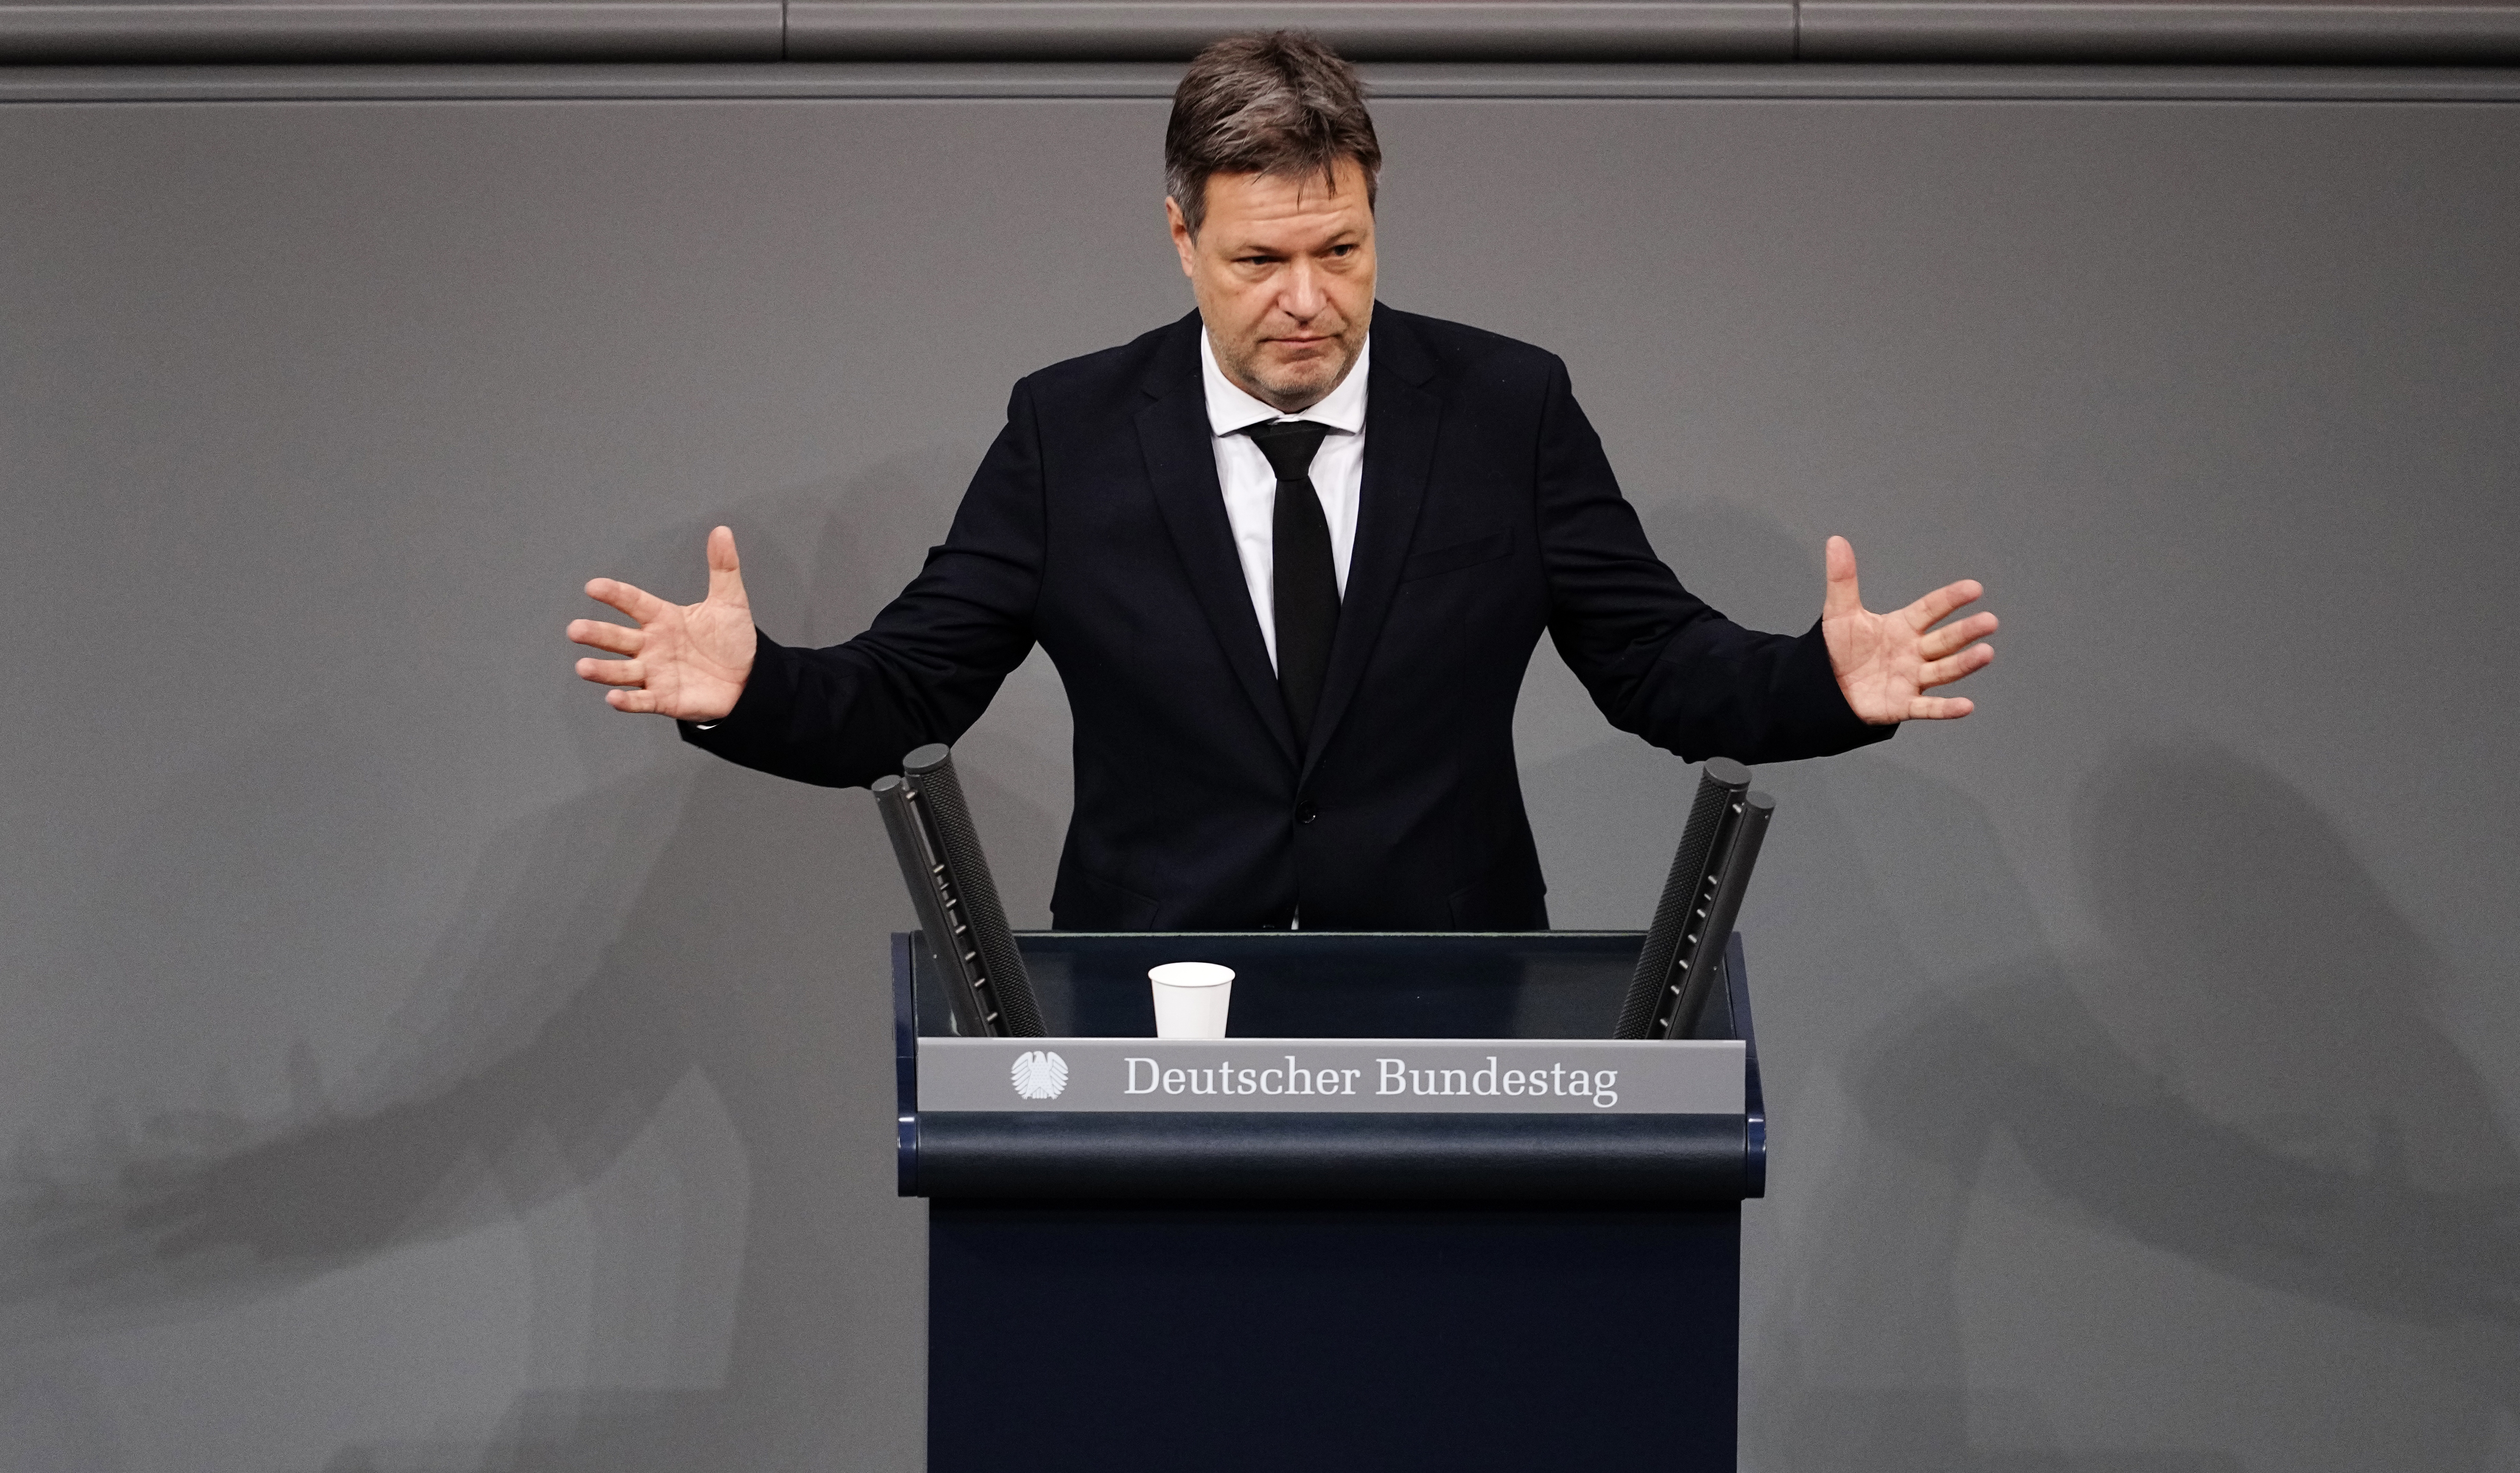 Выборы премьер министра германии. Вице-канцлер ФРГ Хабек.